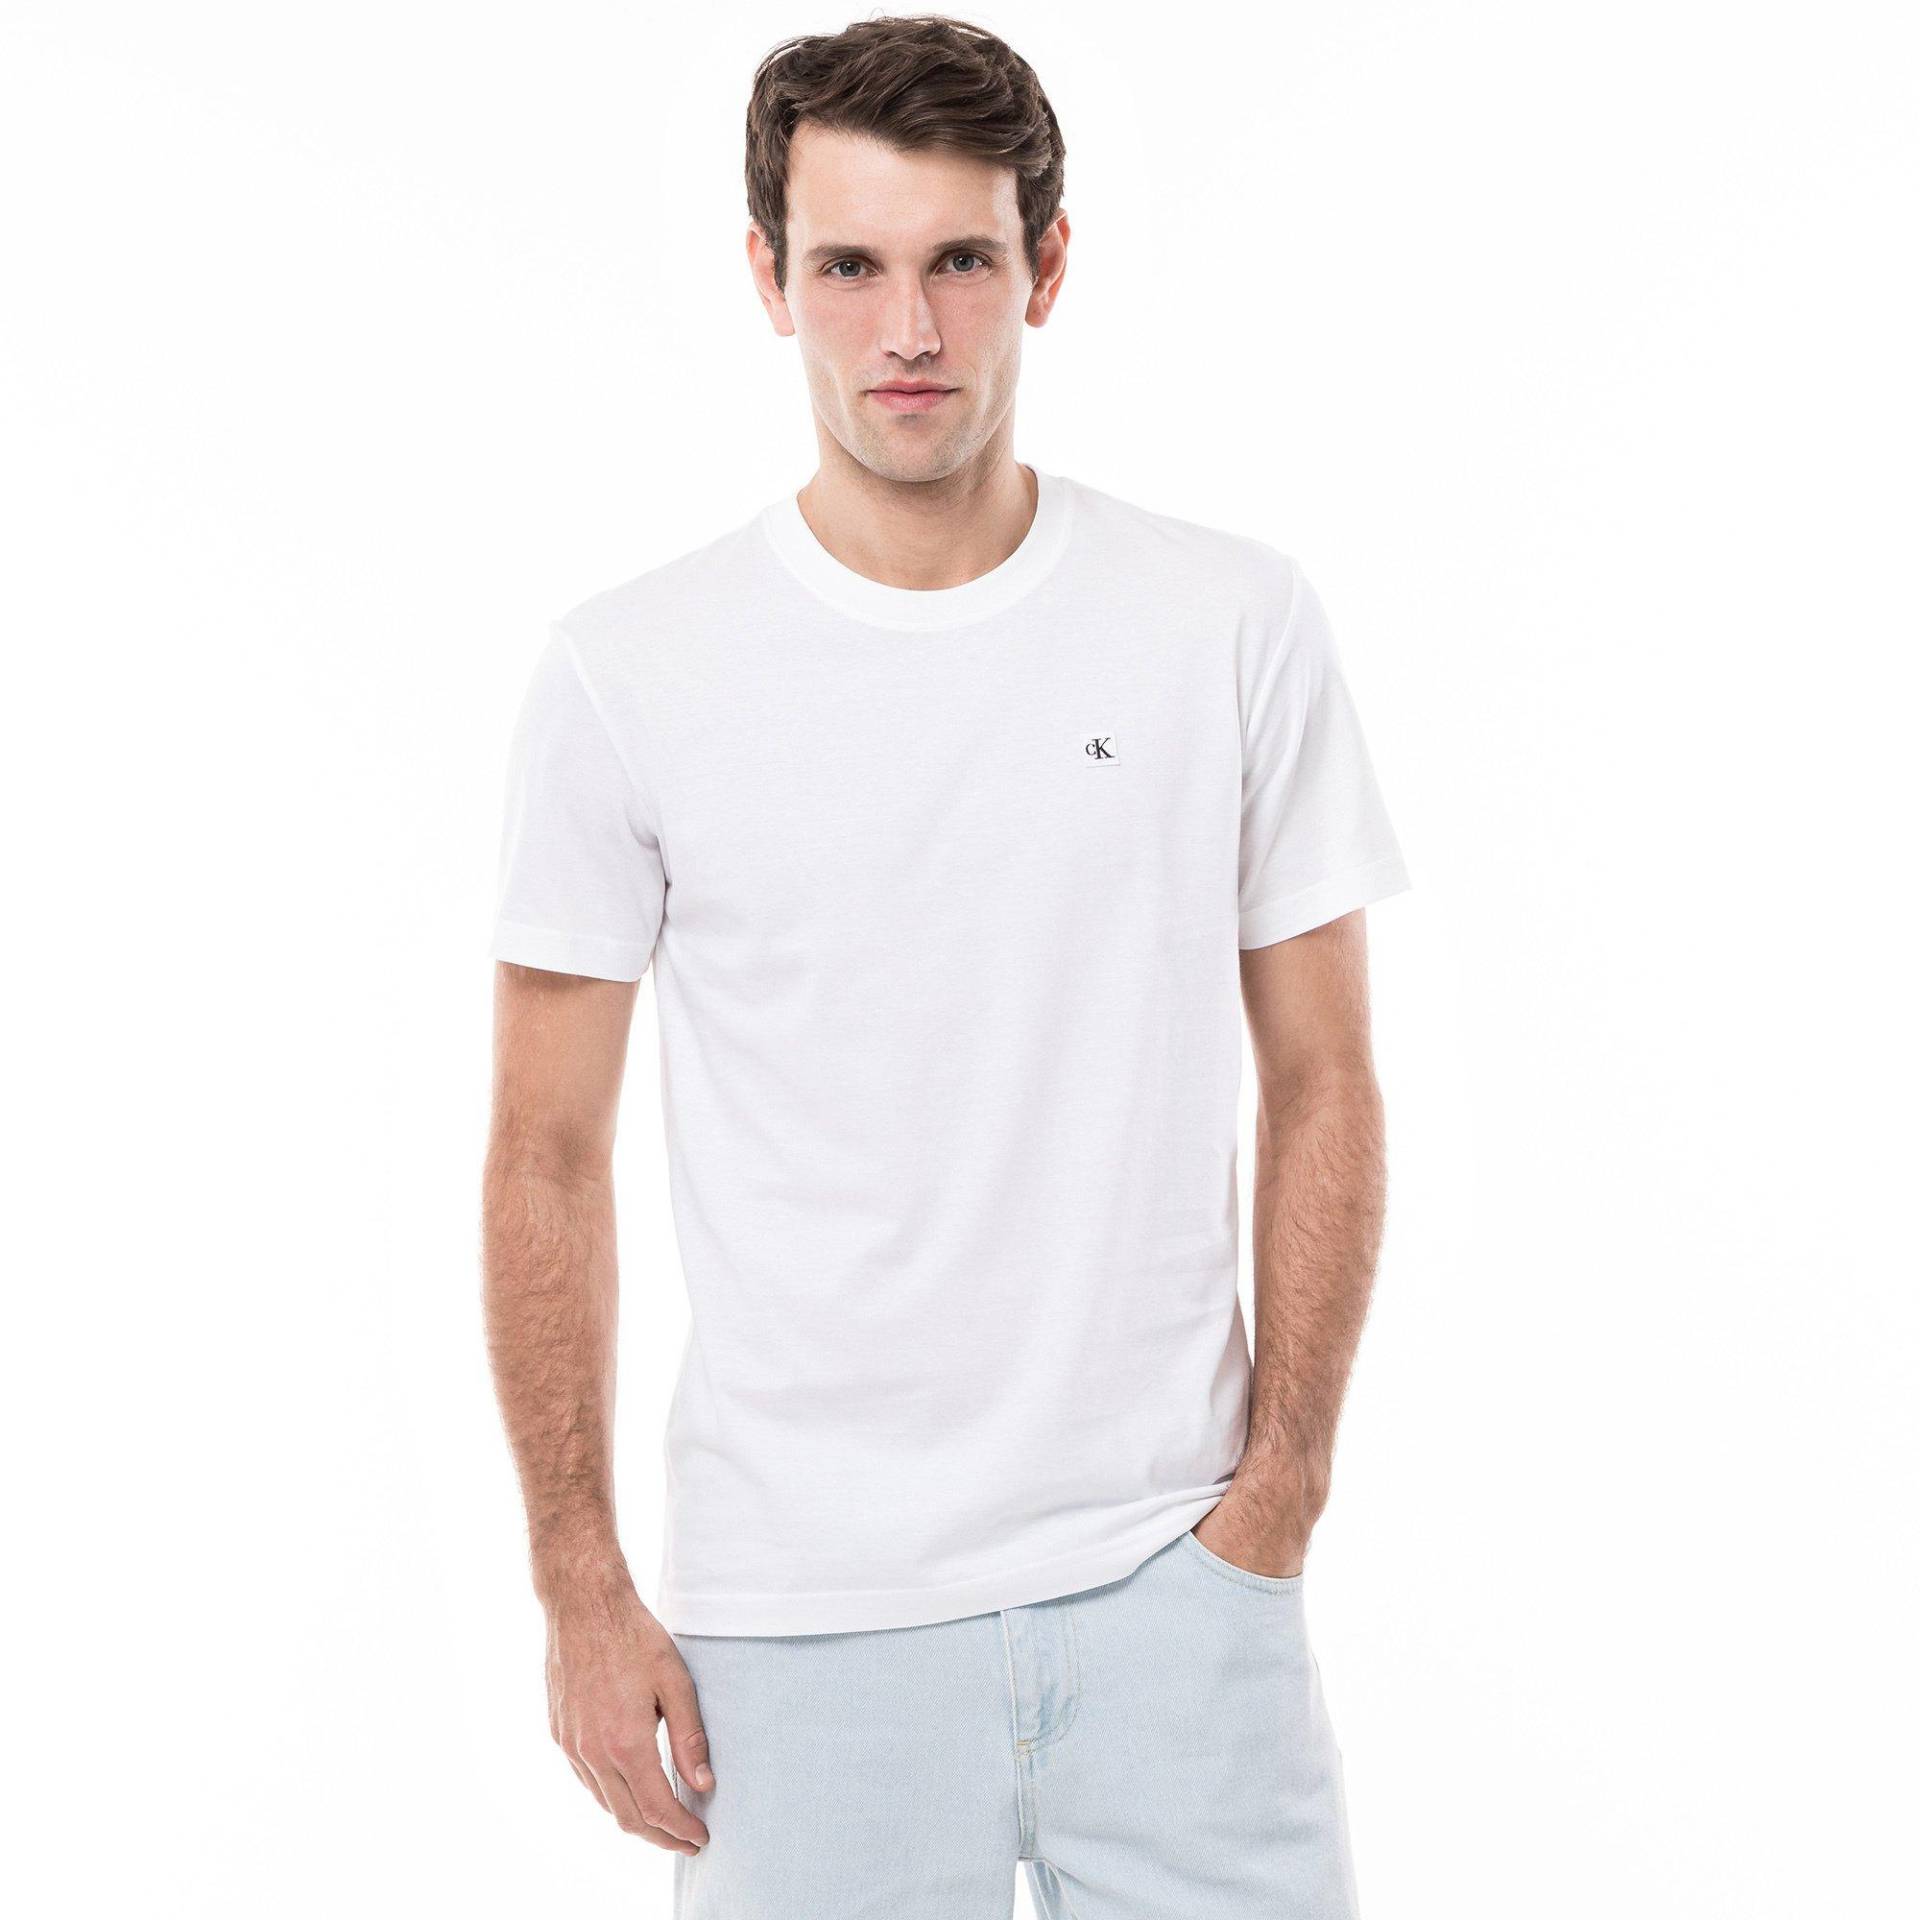 T-shirt Herren Weiss M von Calvin Klein Jeans